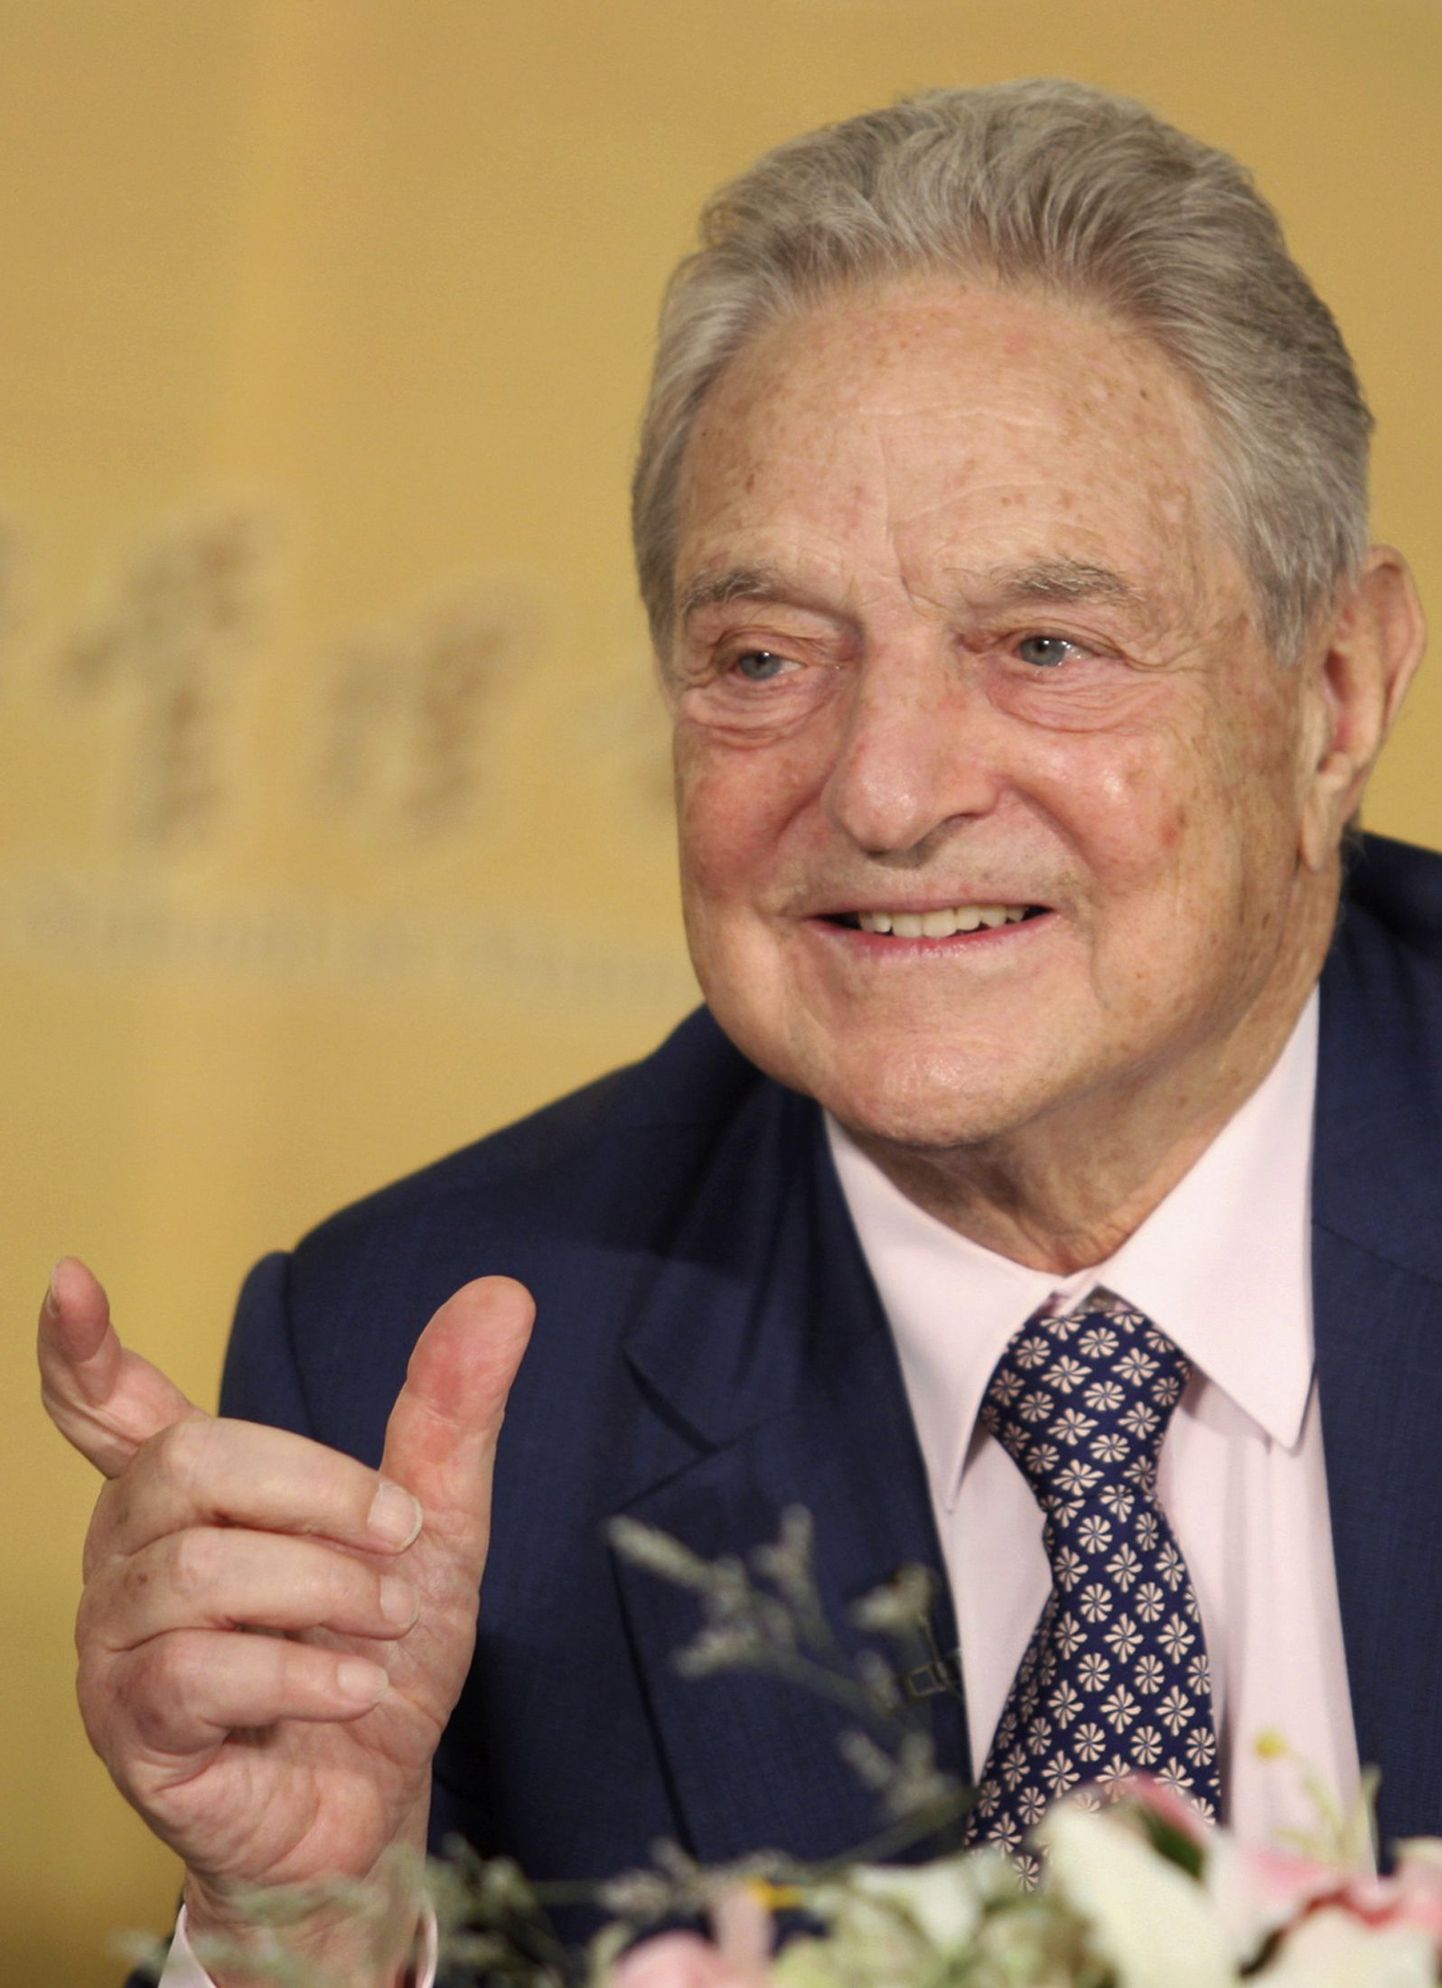 Filantroop George Soros